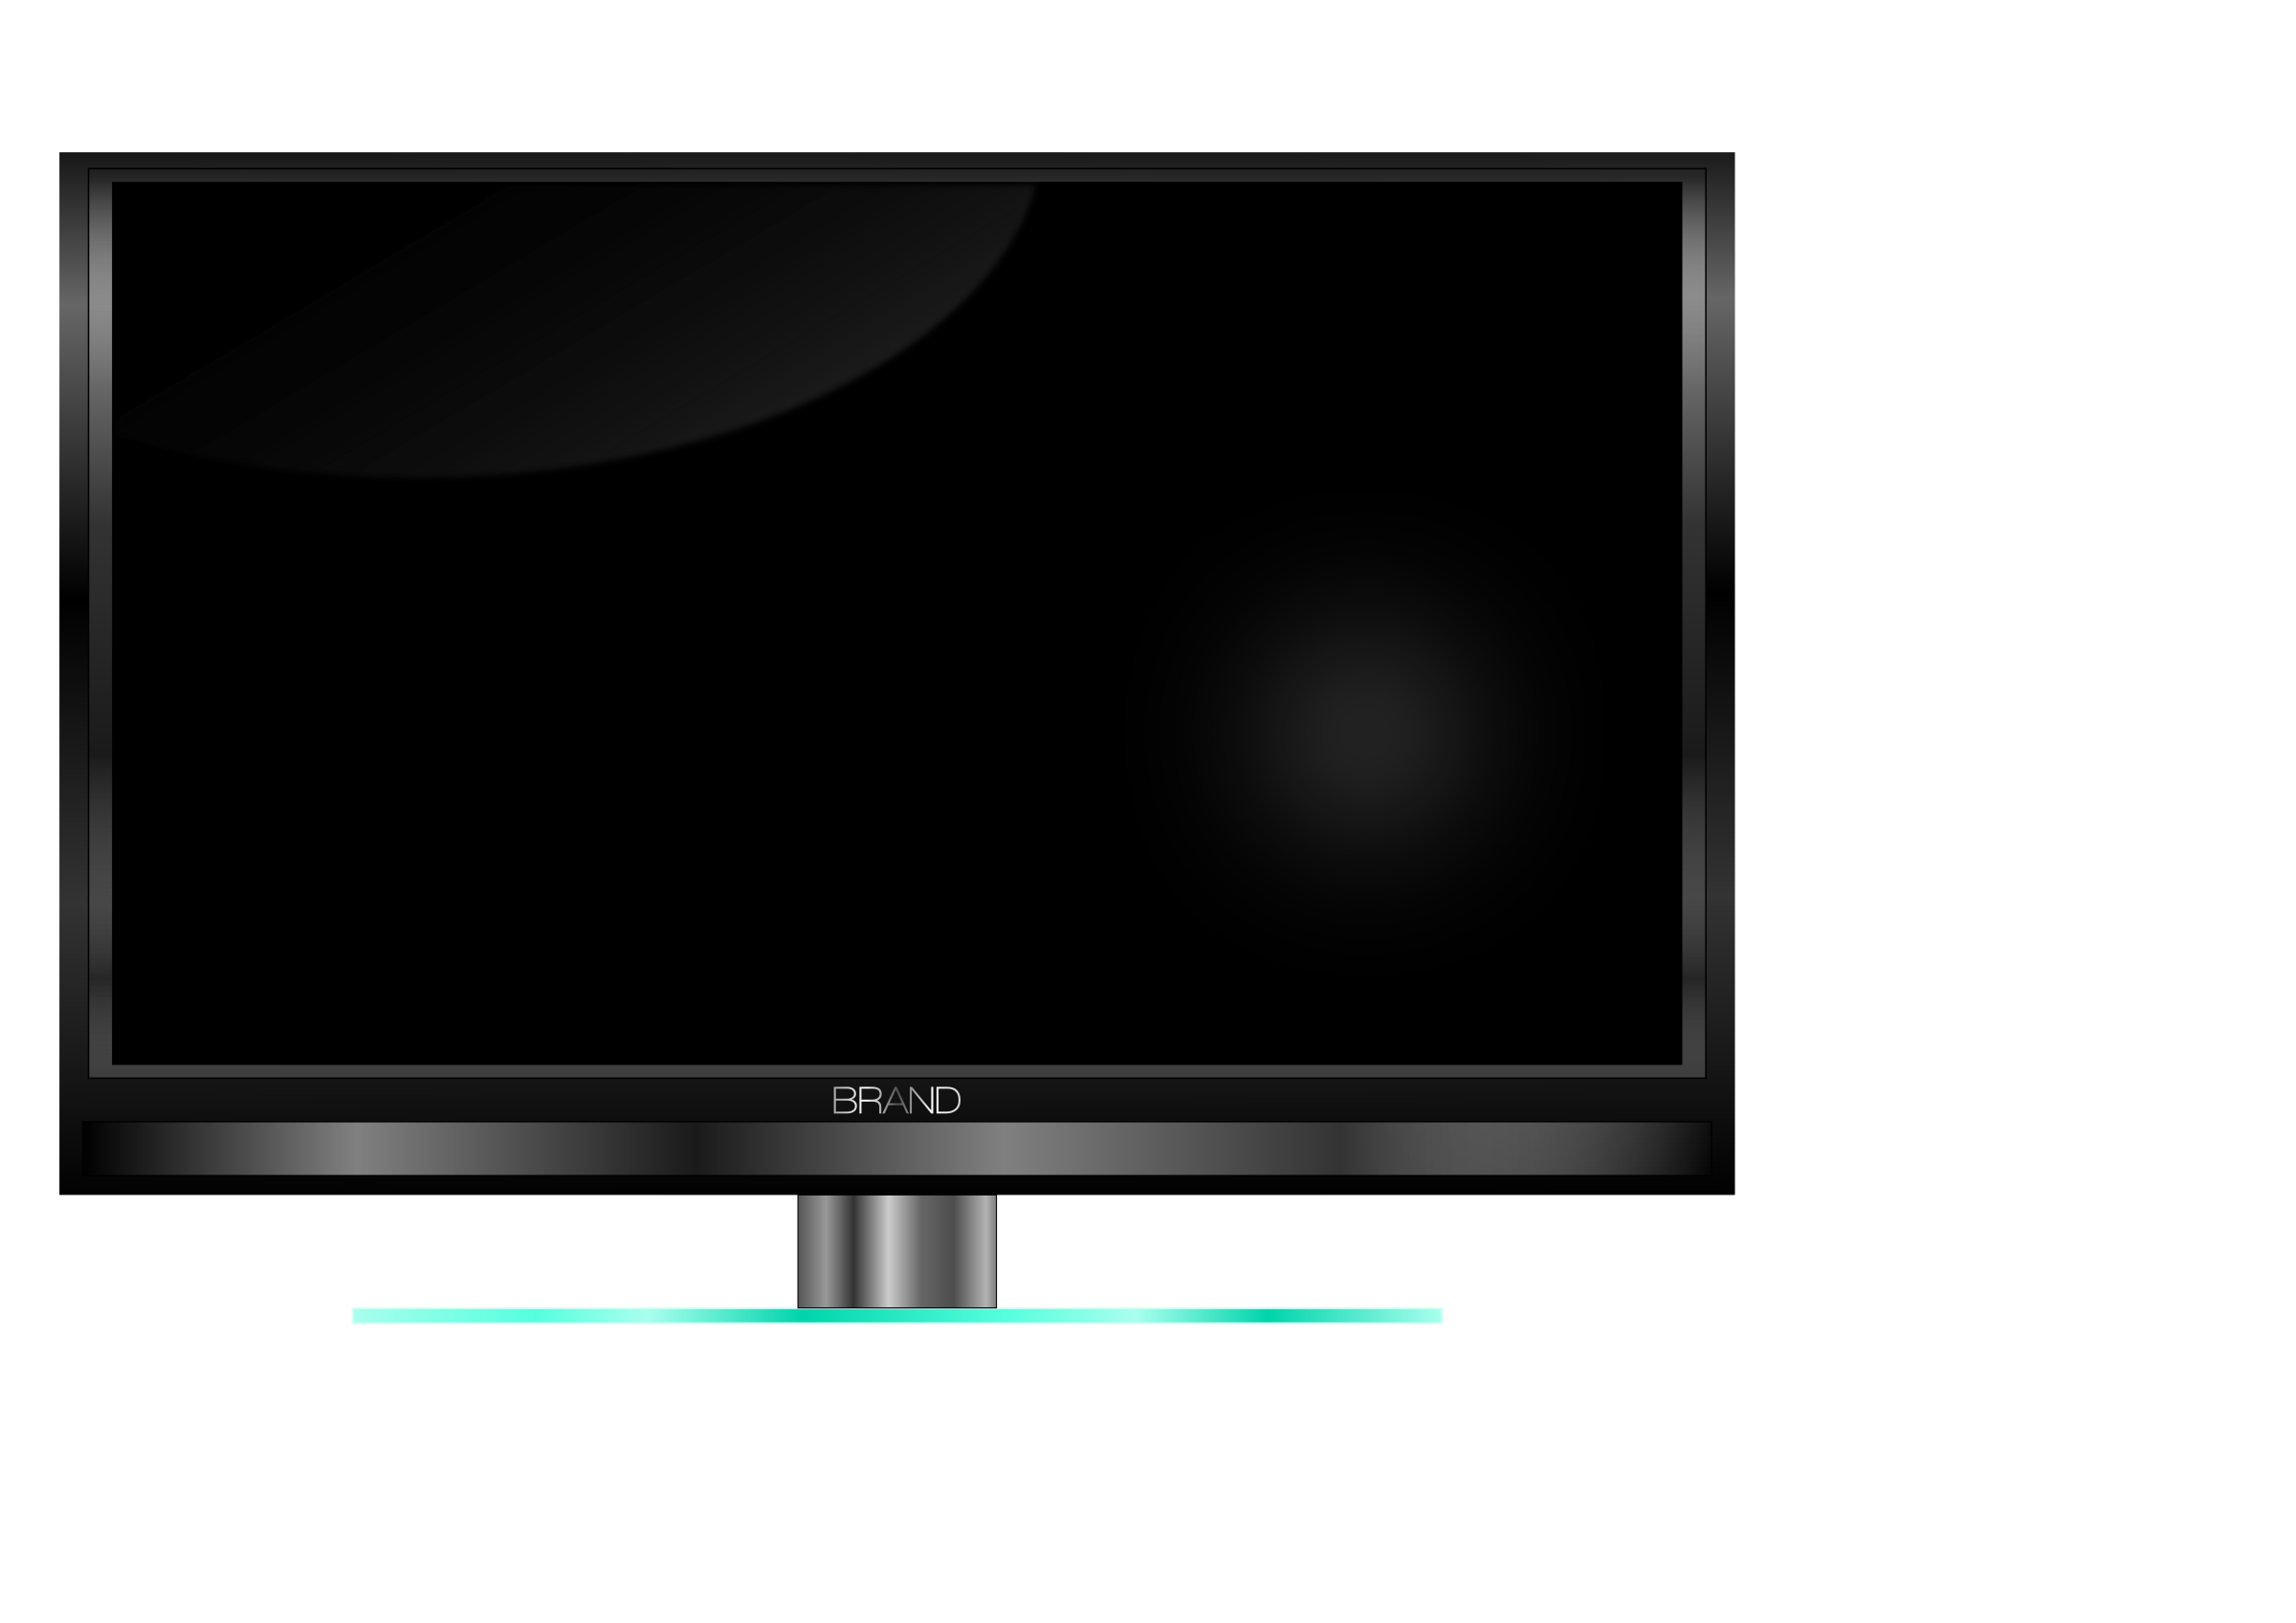 Full HD LED TV PNG Image HD